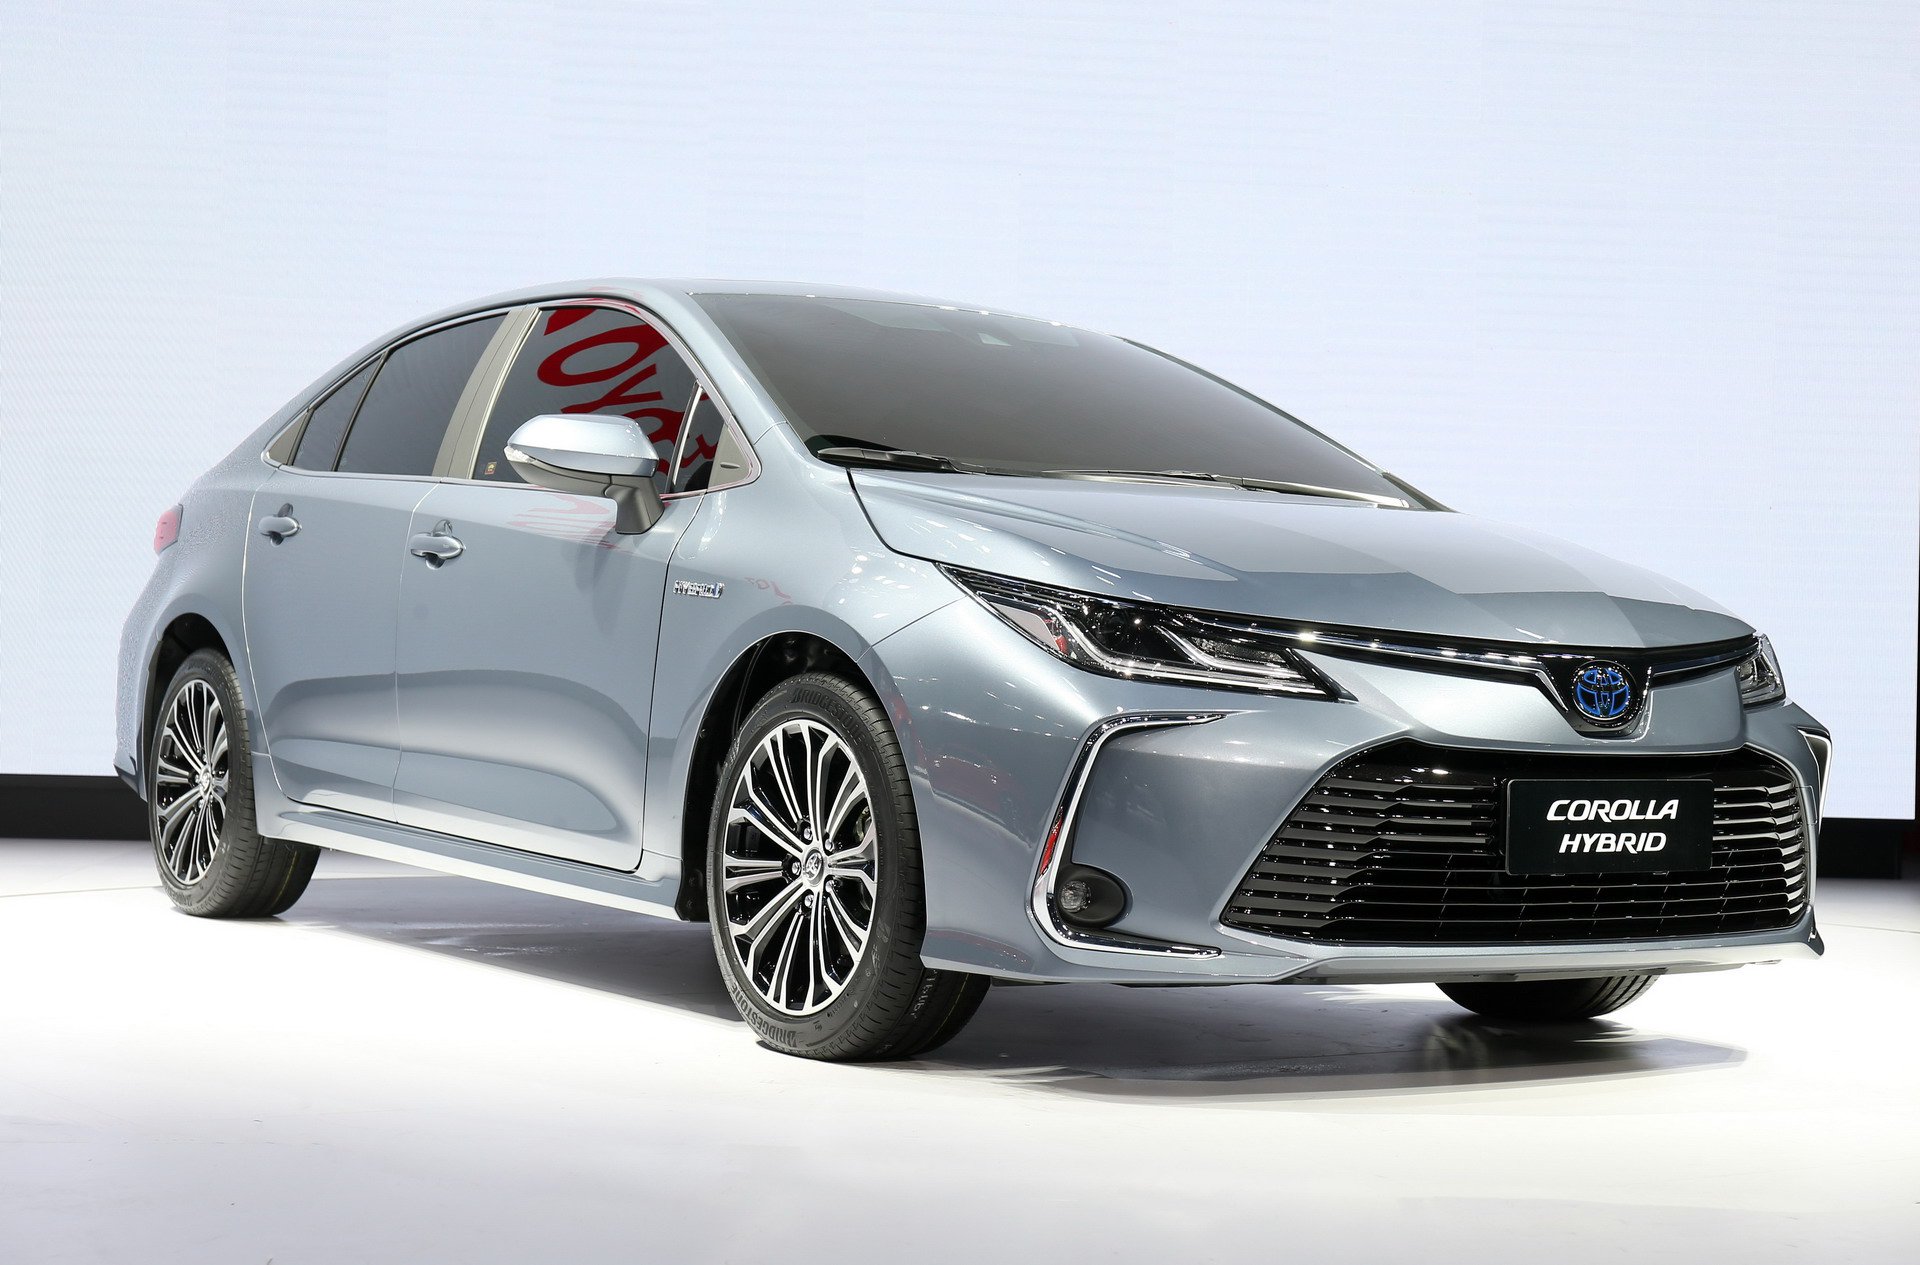 Yeni Toyota Corolla Sedan tanıtıldı! Hibrit versiyonla birlikte geliyor